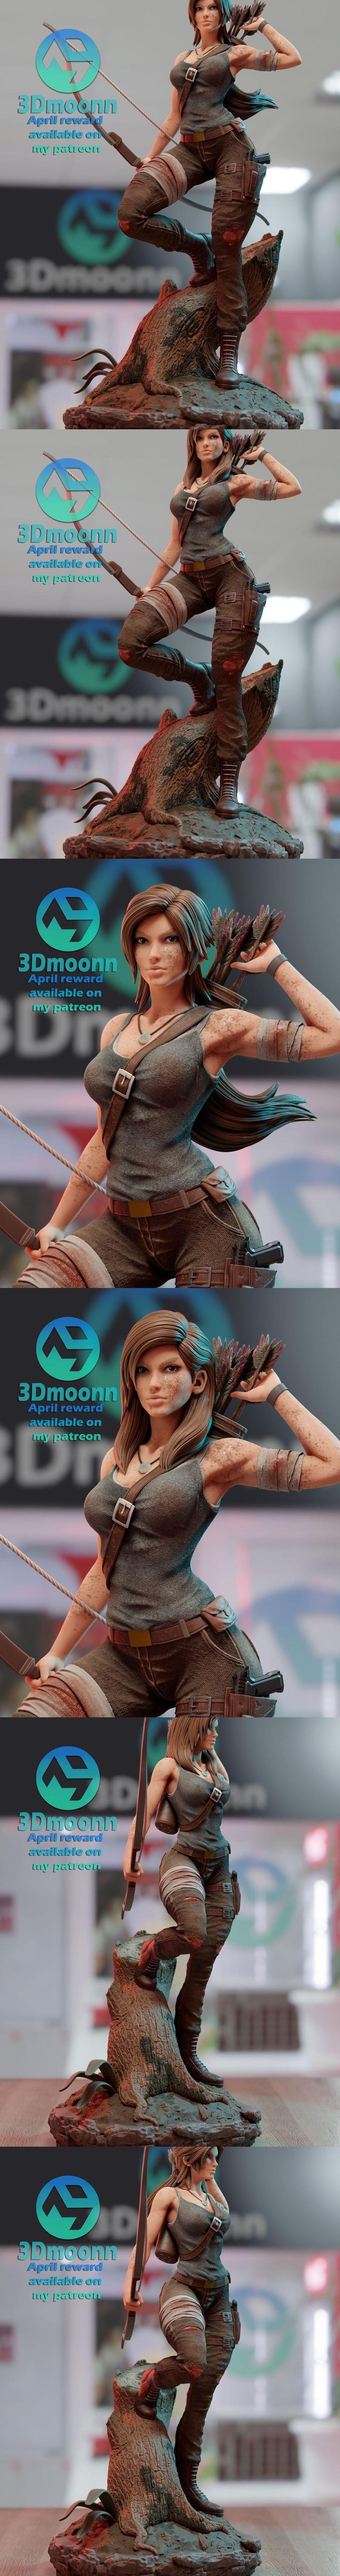 3Dmoonn – Lara Croft - Tomb Raider  